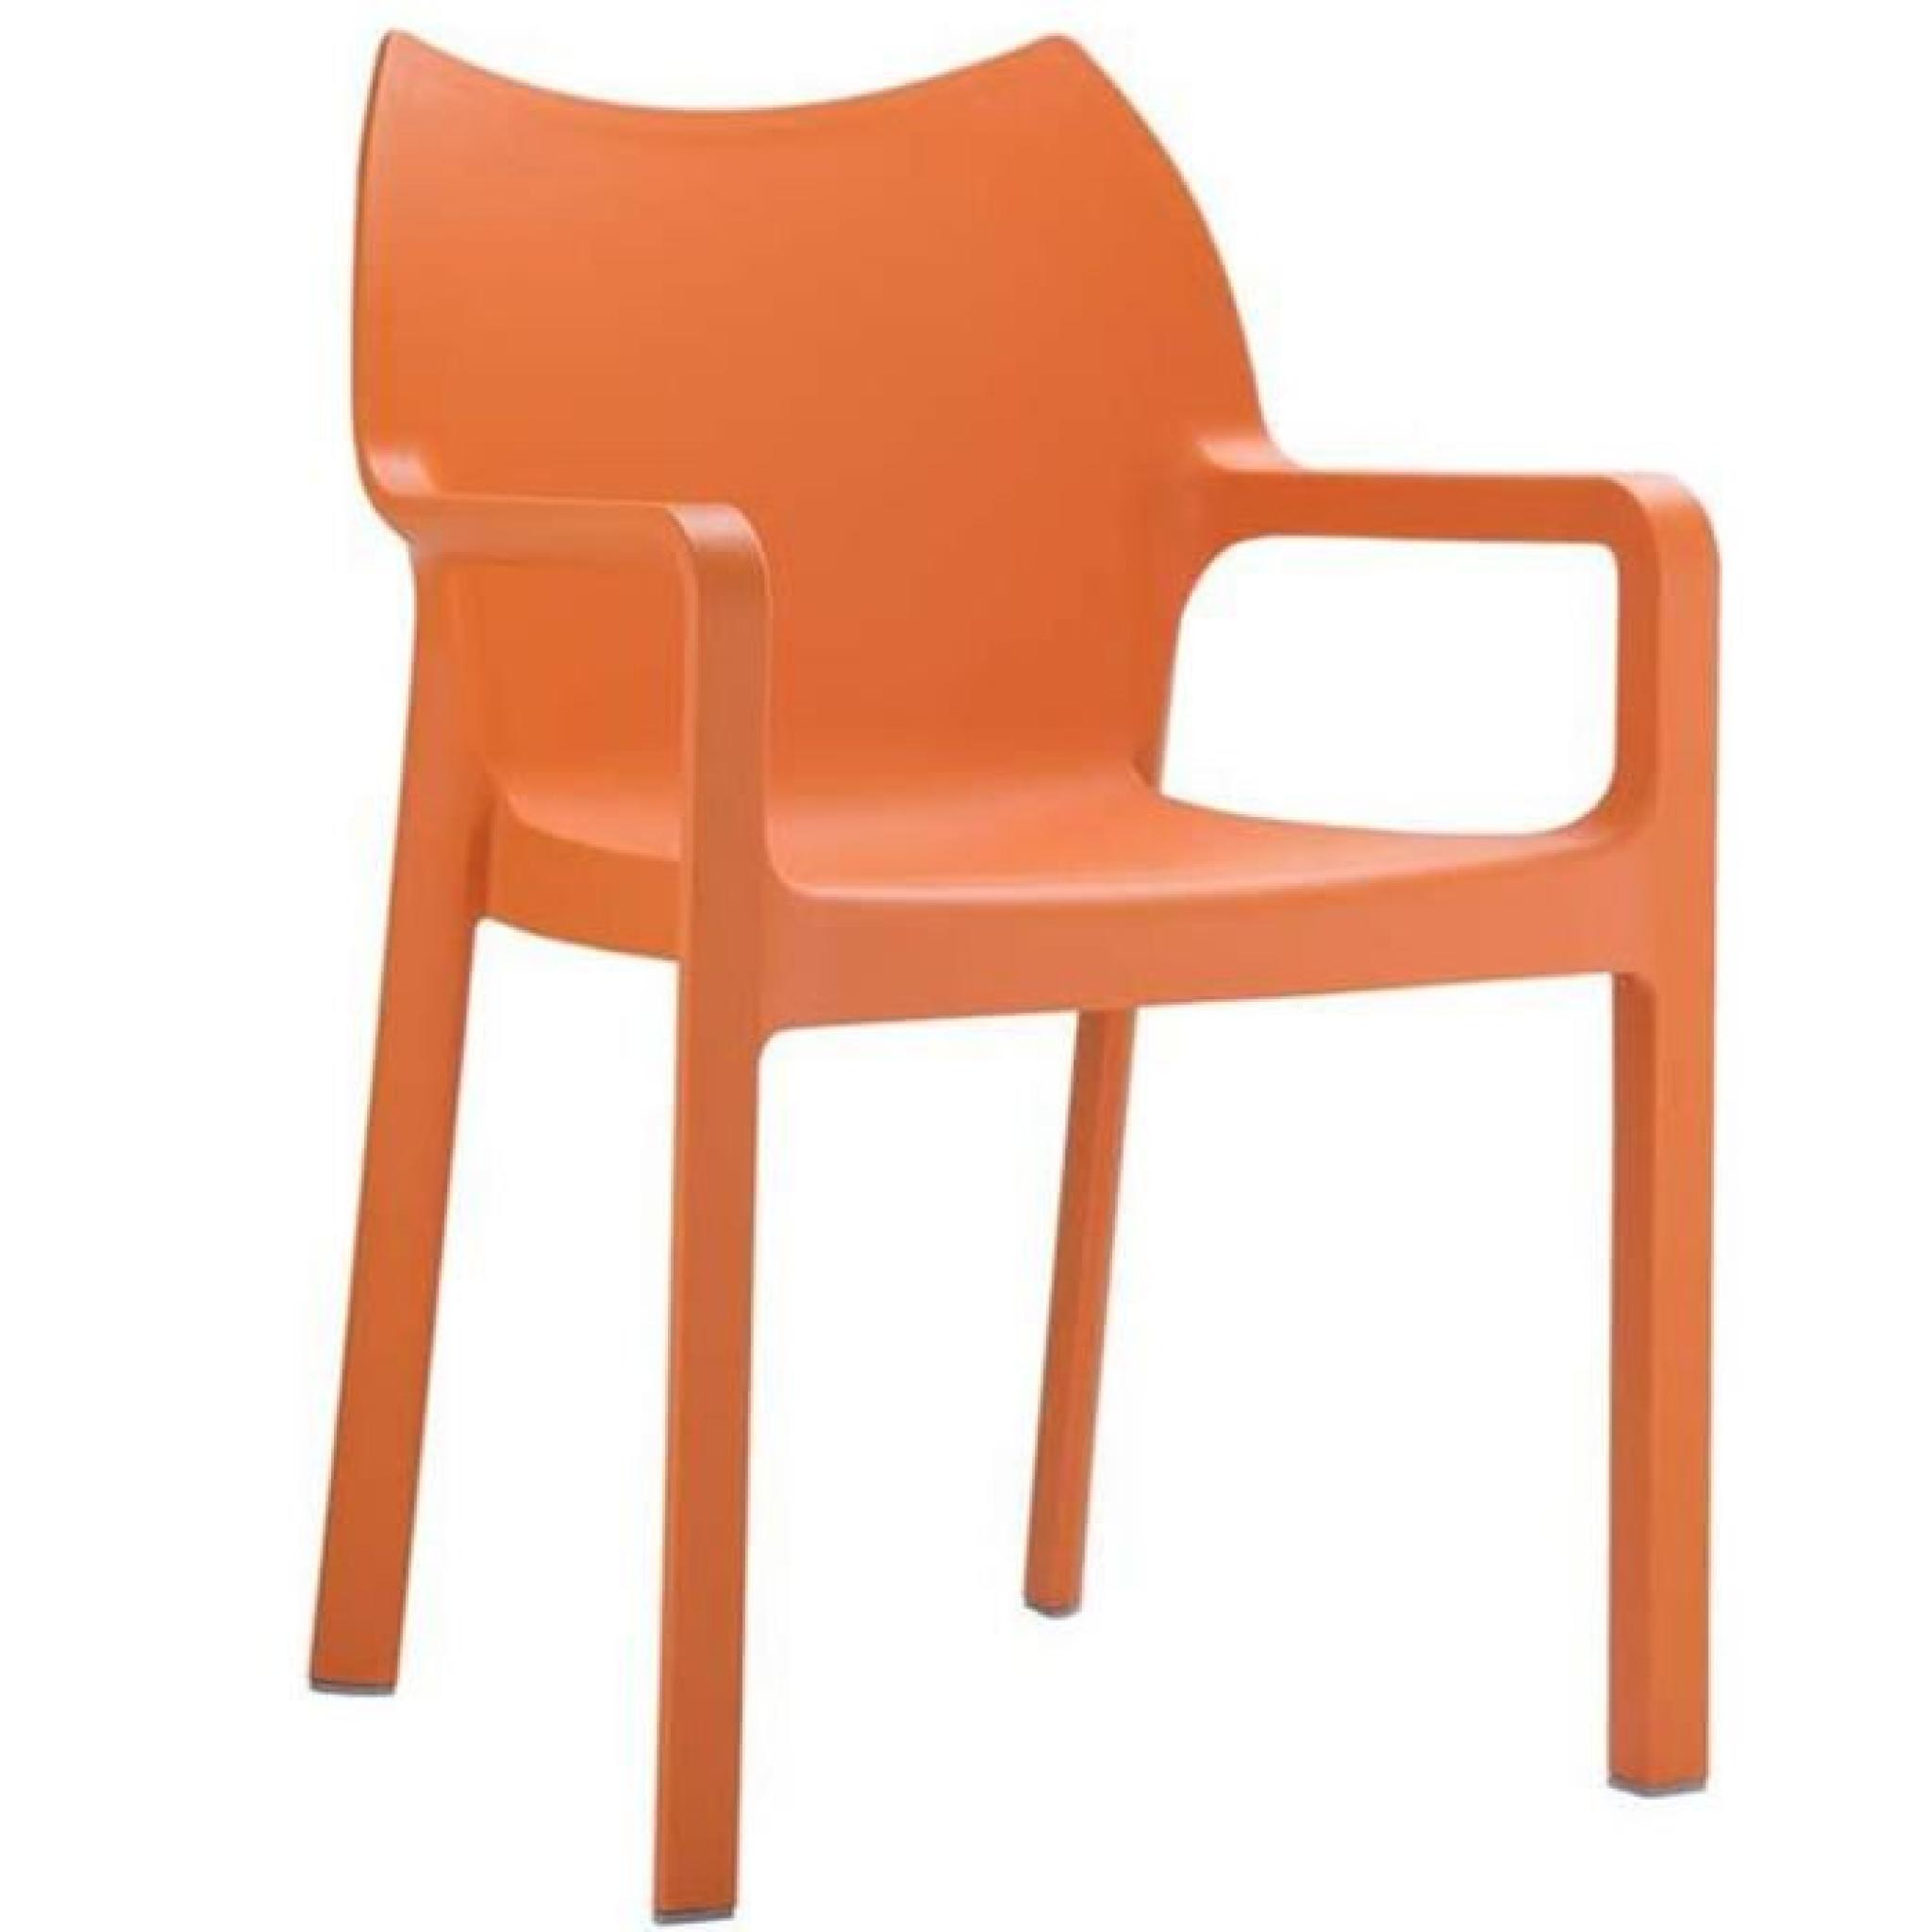 Chaise de jardin empilable en plastique, orange